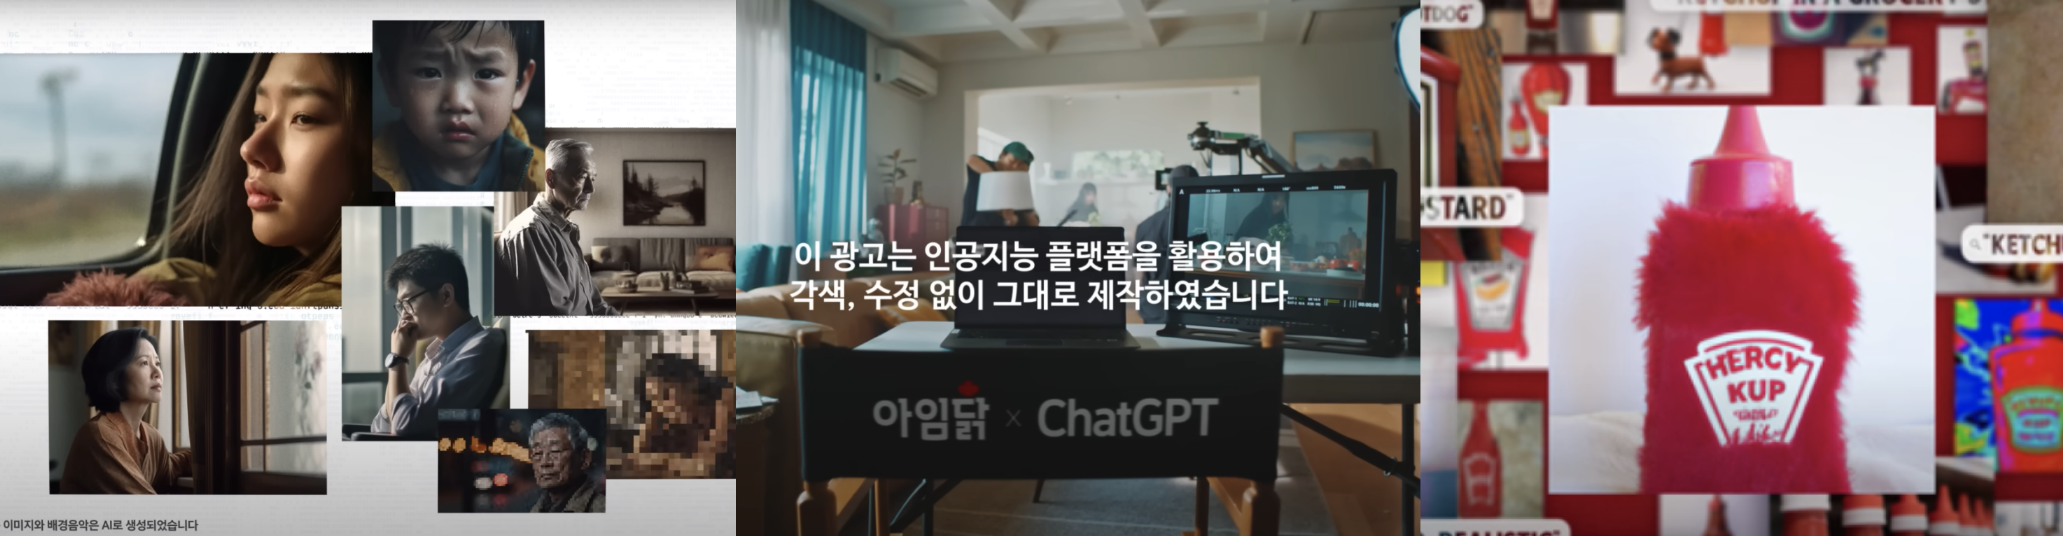 출처 - 삼성생명, 아임닭, 하이즈코리아 공식 유튜브